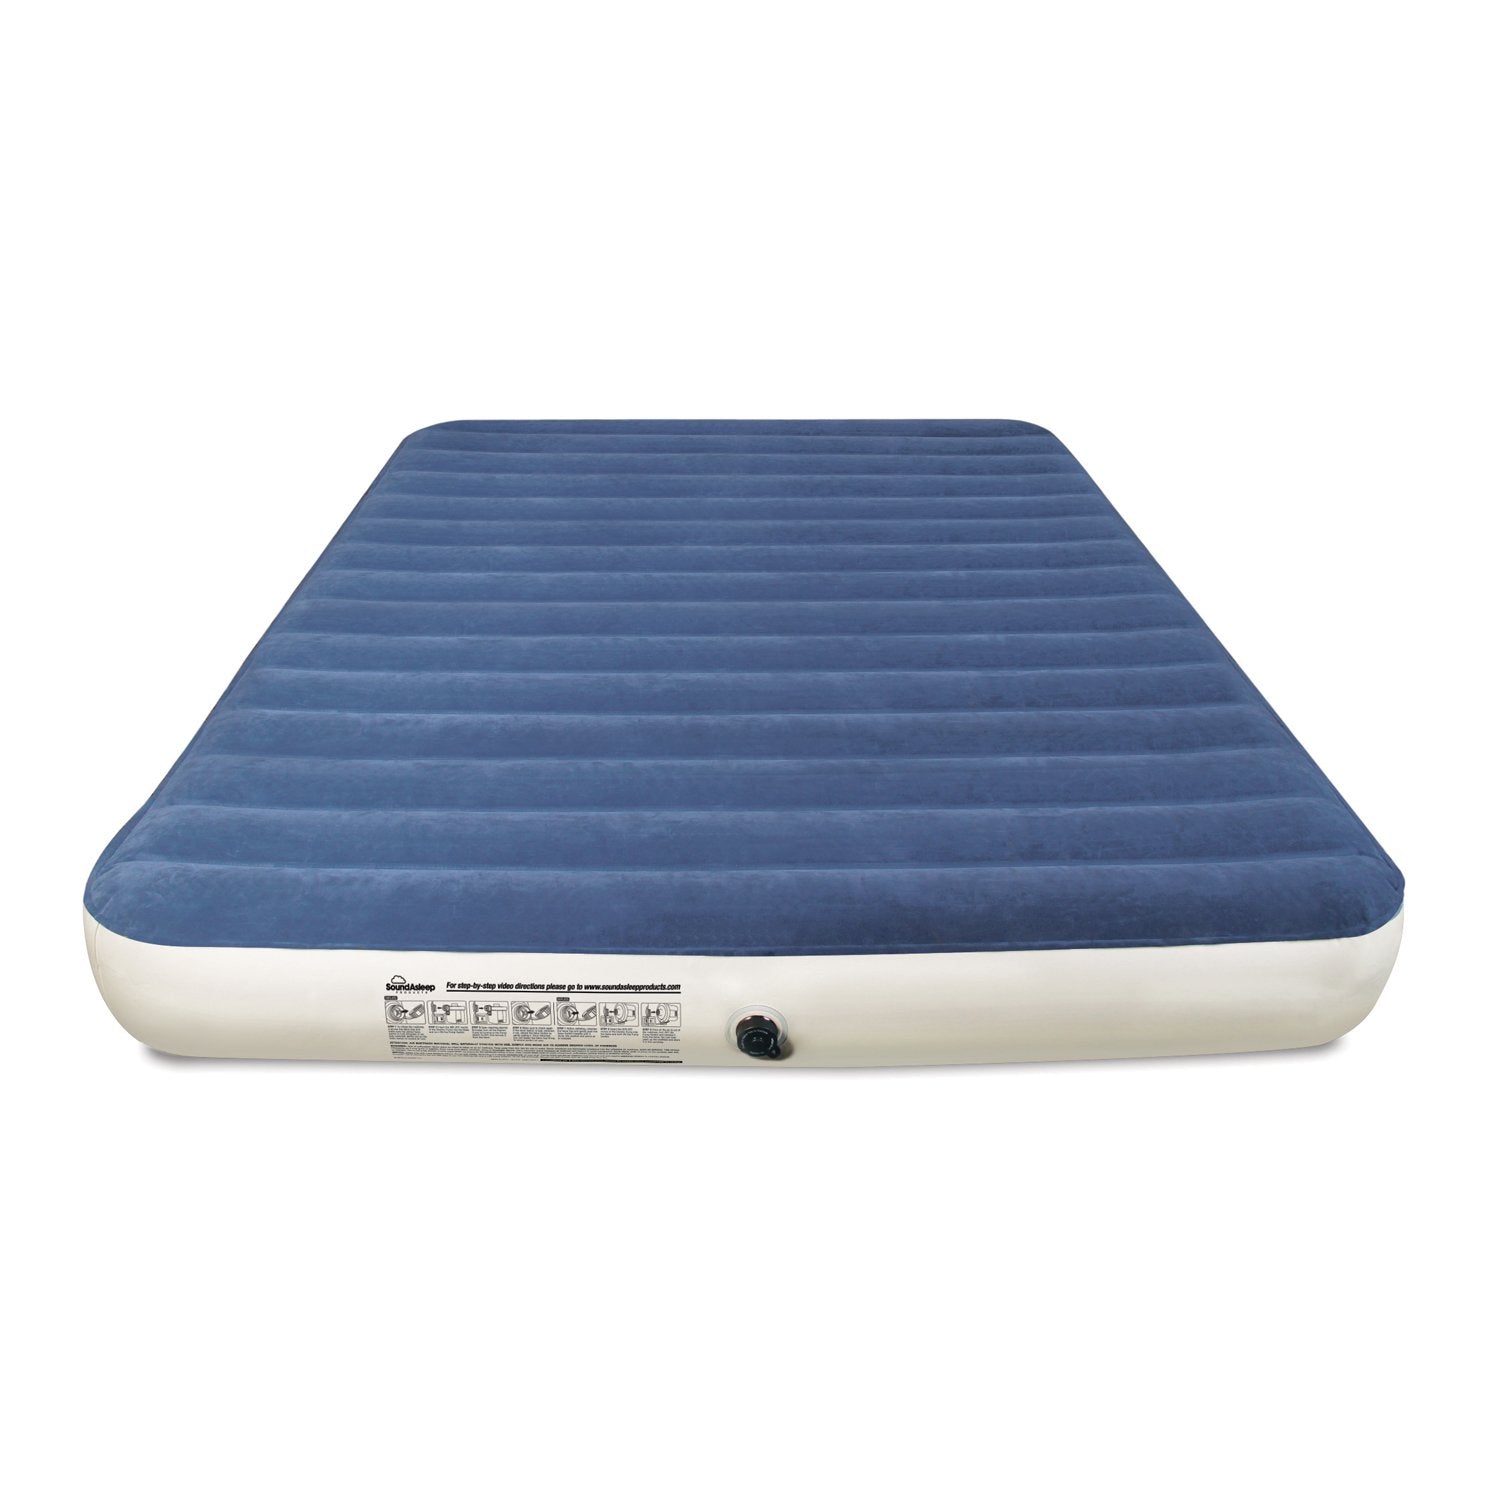 soundasleep air mattress walmart